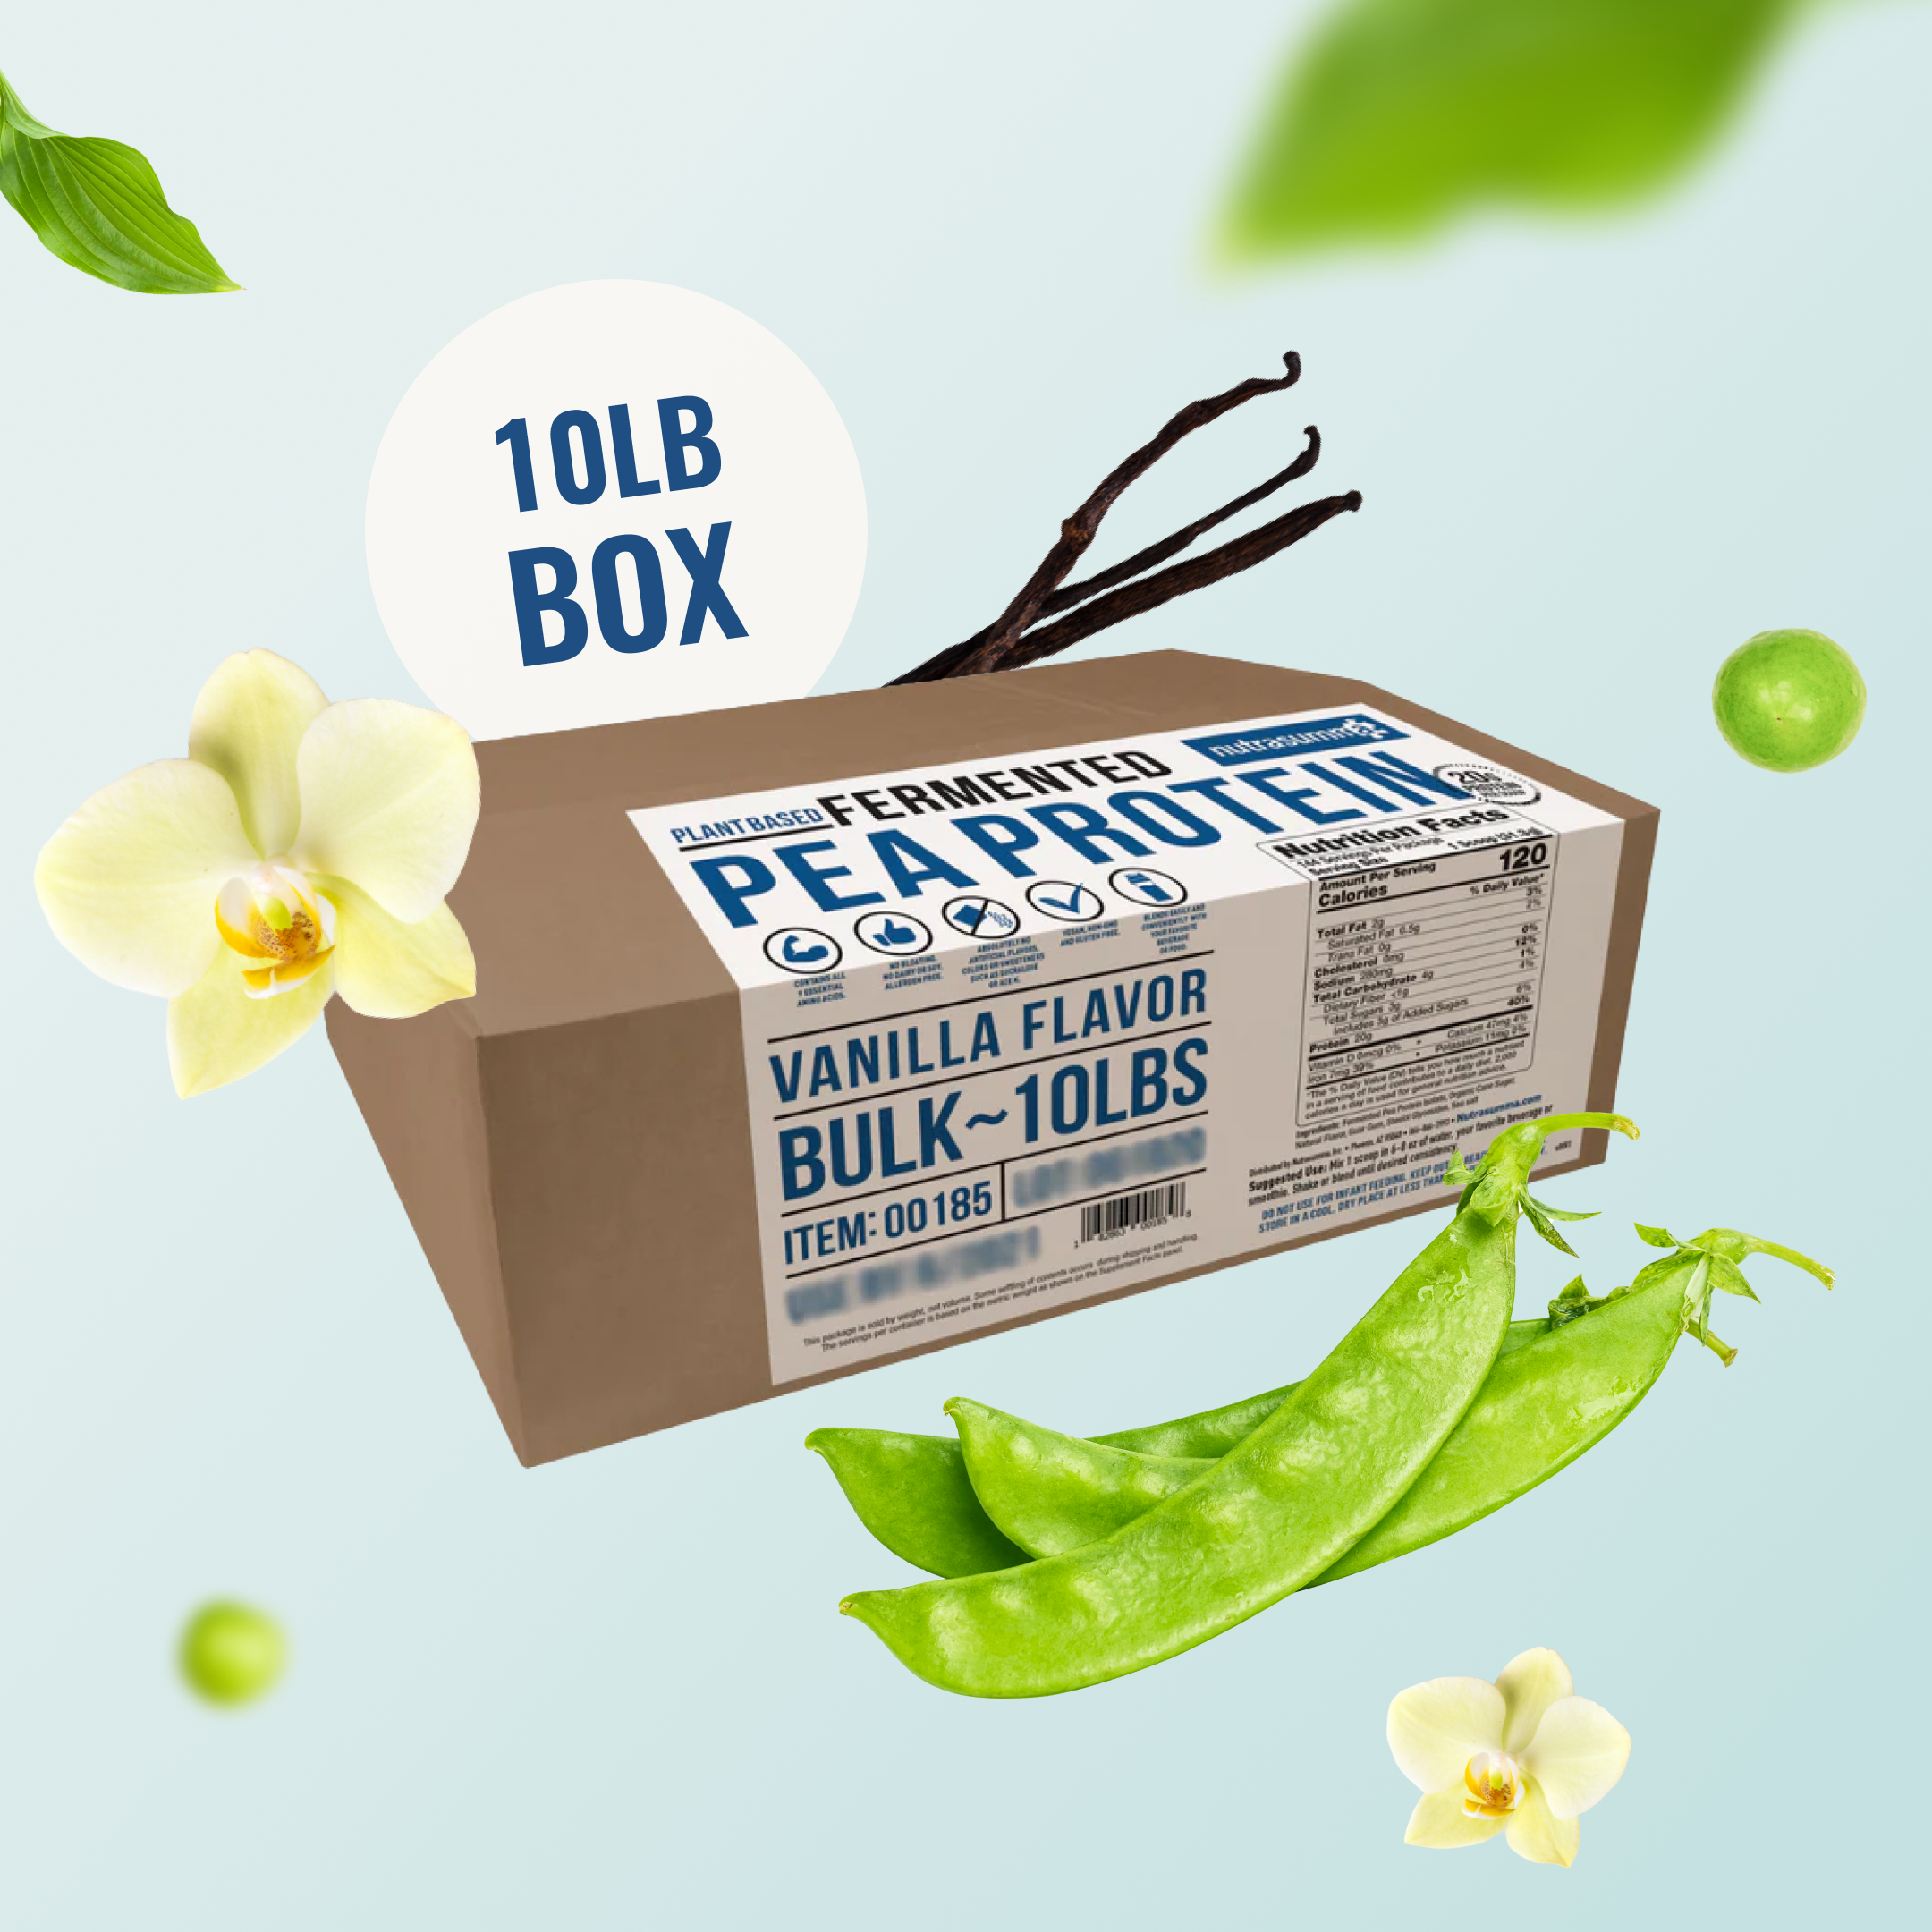 Fermented Pea Protein 10lb Box - Vanilla Flavor